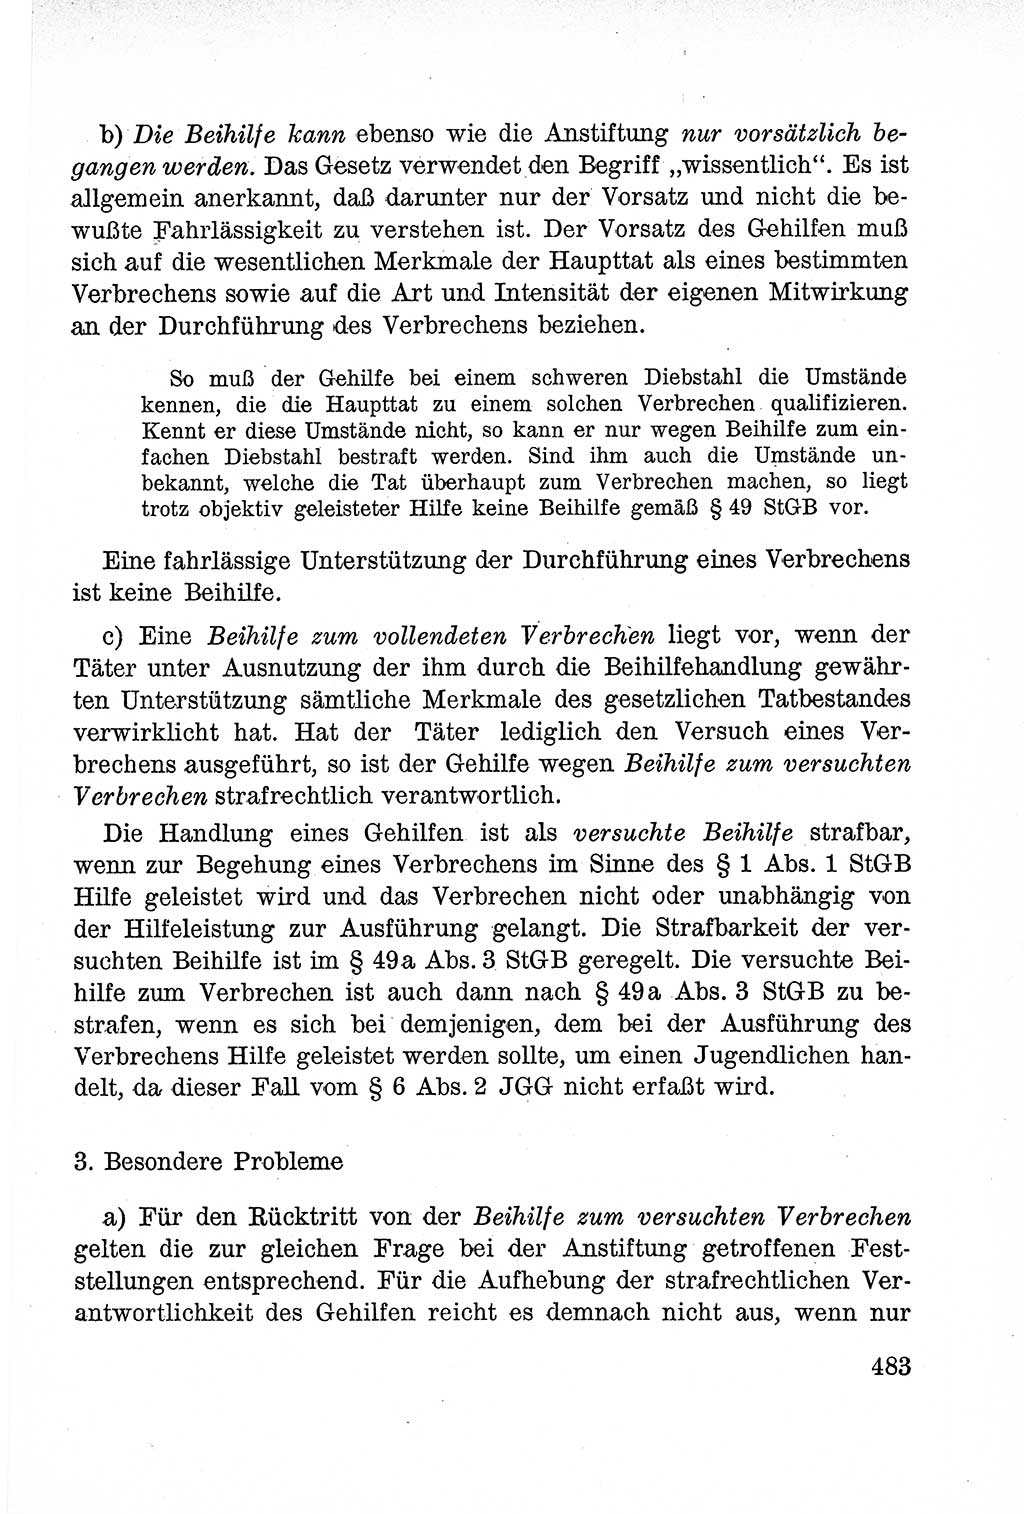 Lehrbuch des Strafrechts der Deutschen Demokratischen Republik (DDR), Allgemeiner Teil 1957, Seite 483 (Lb. Strafr. DDR AT 1957, S. 483)